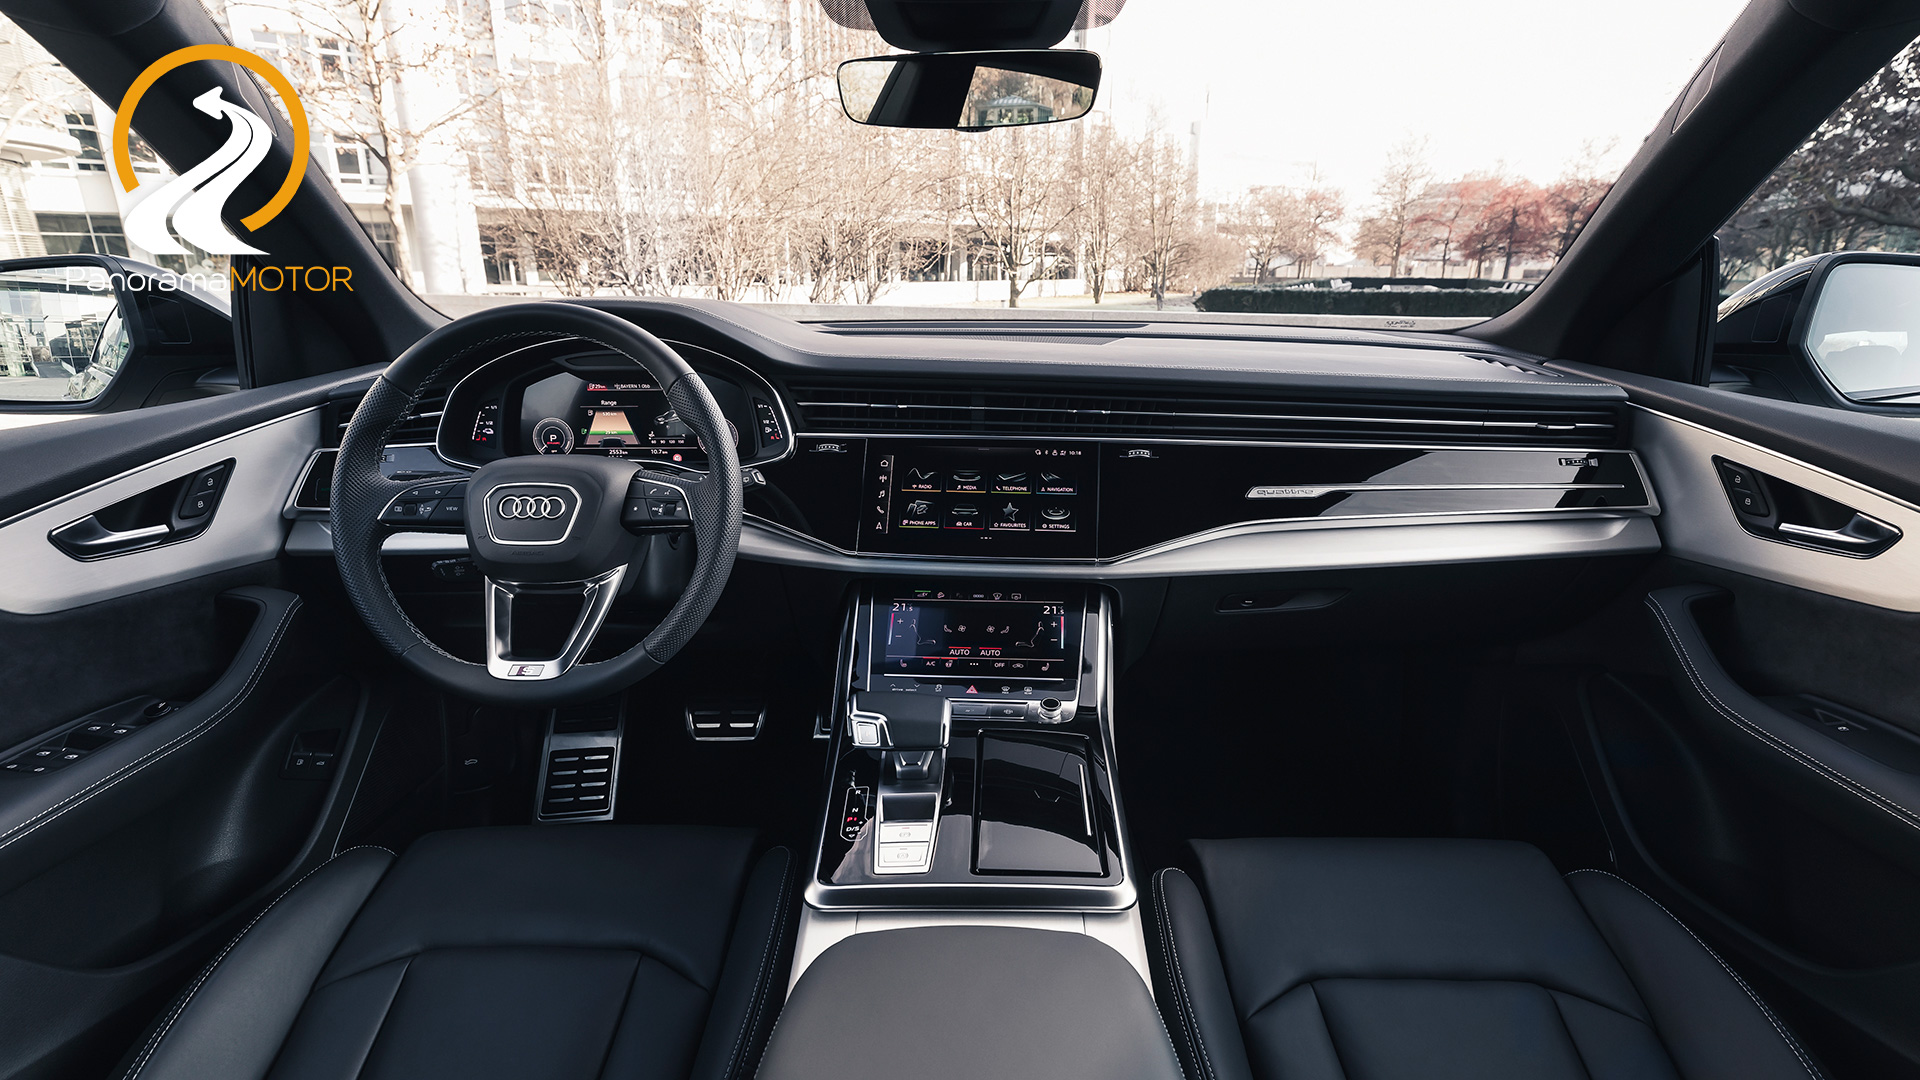 Audi Q8 TFSIe quattro 2021